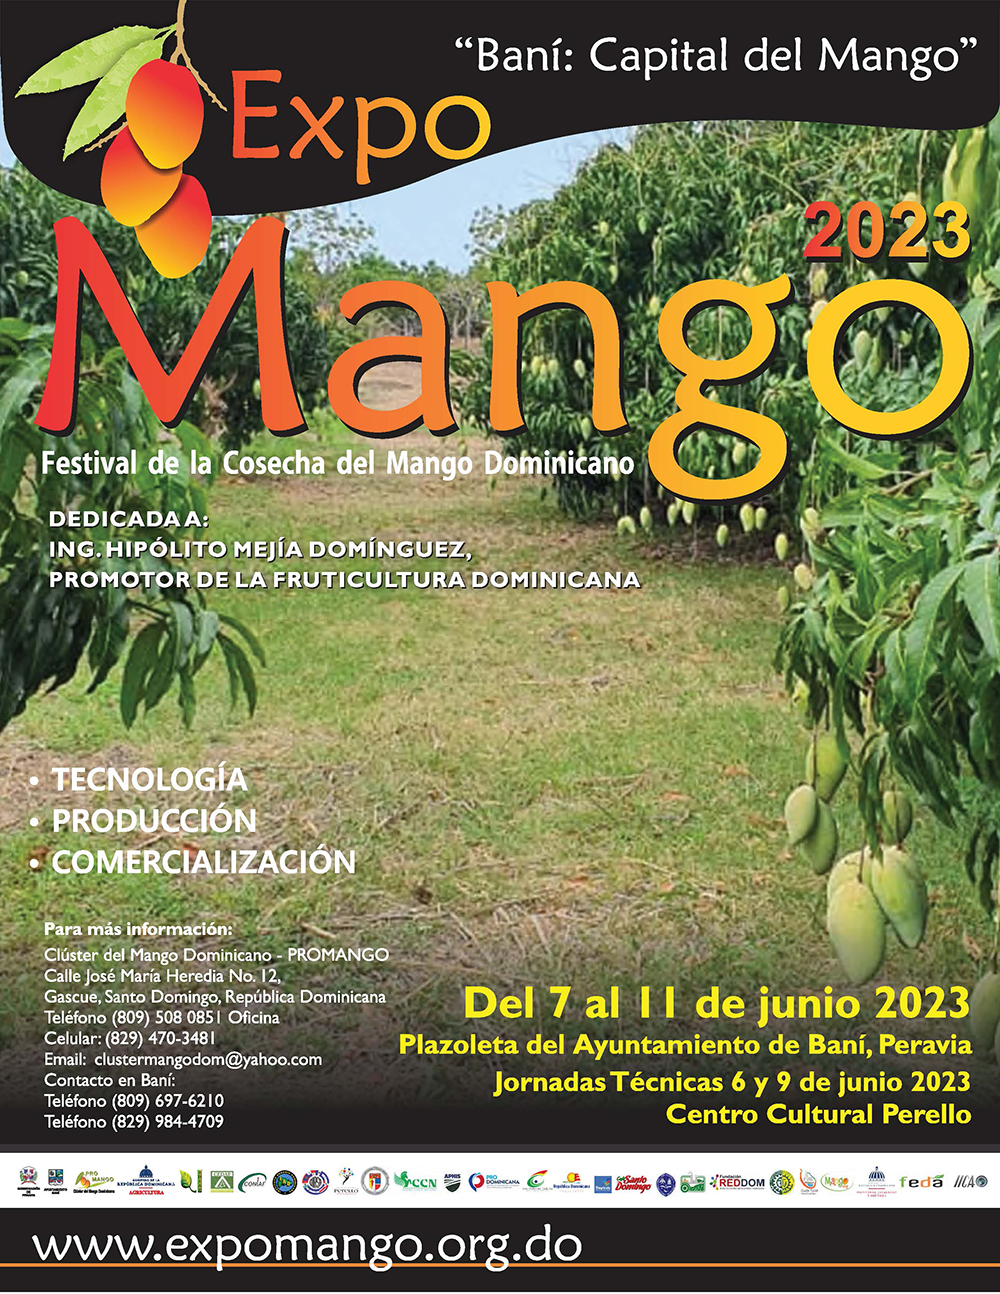 transatlántico Metropolitano Manchuria Expo Mango 2023